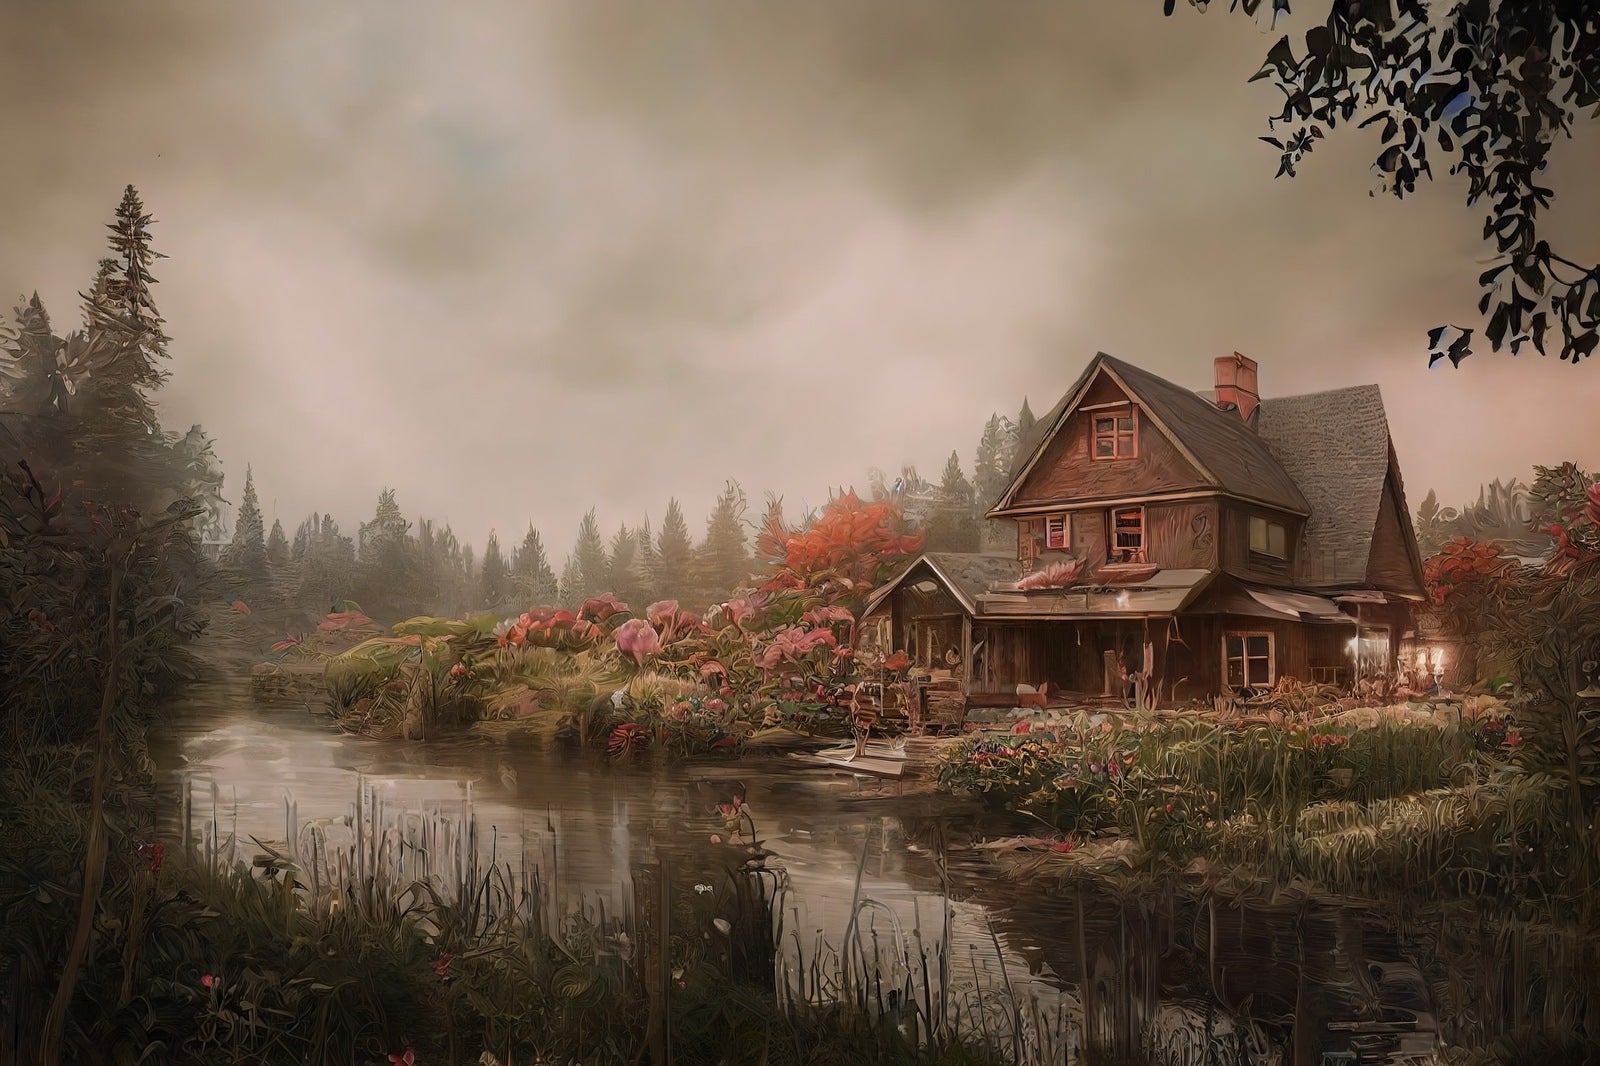 「湖畔の一軒家」の写真